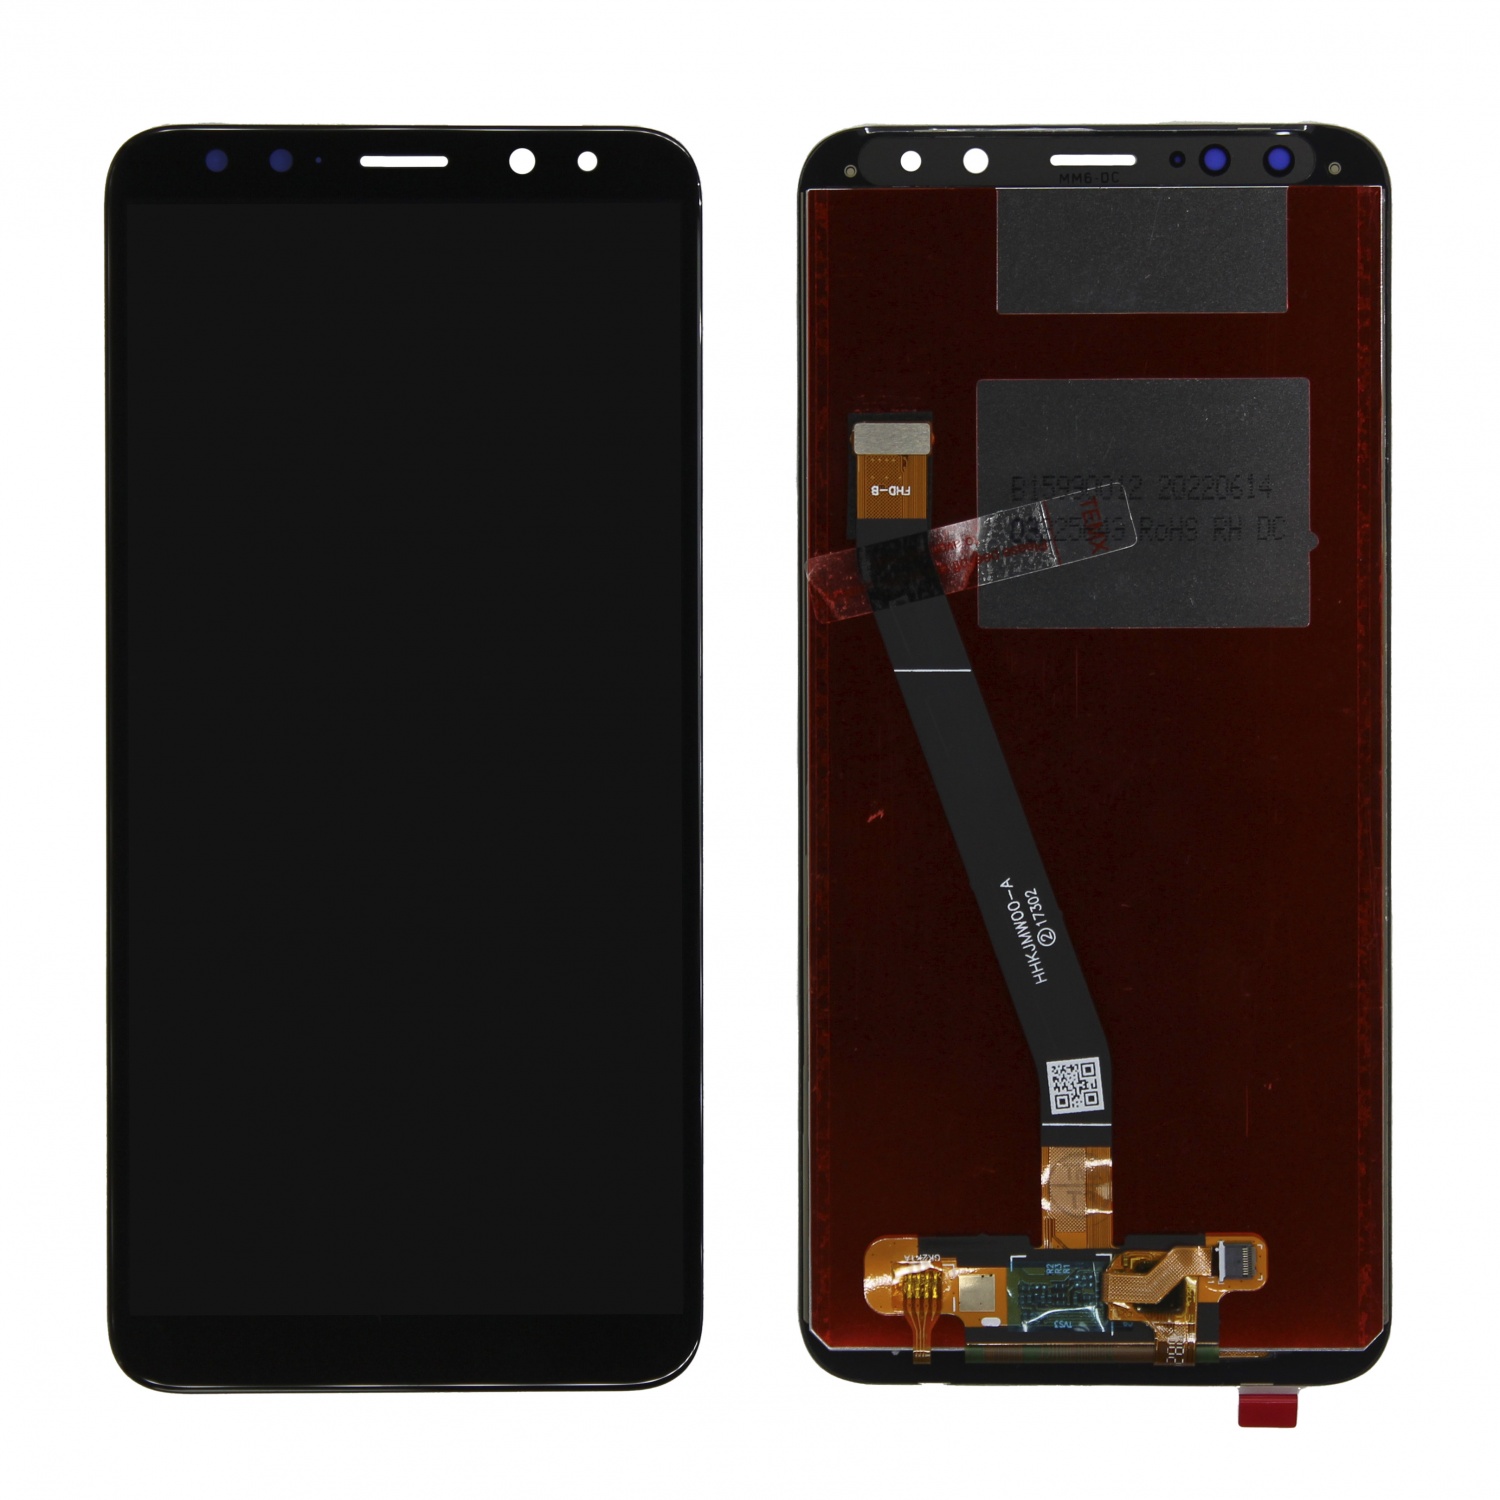 Дисплейный модуль для Huawei Nova 2i/Mate 10 Lite (RNE-L21/L01)  (Черный)